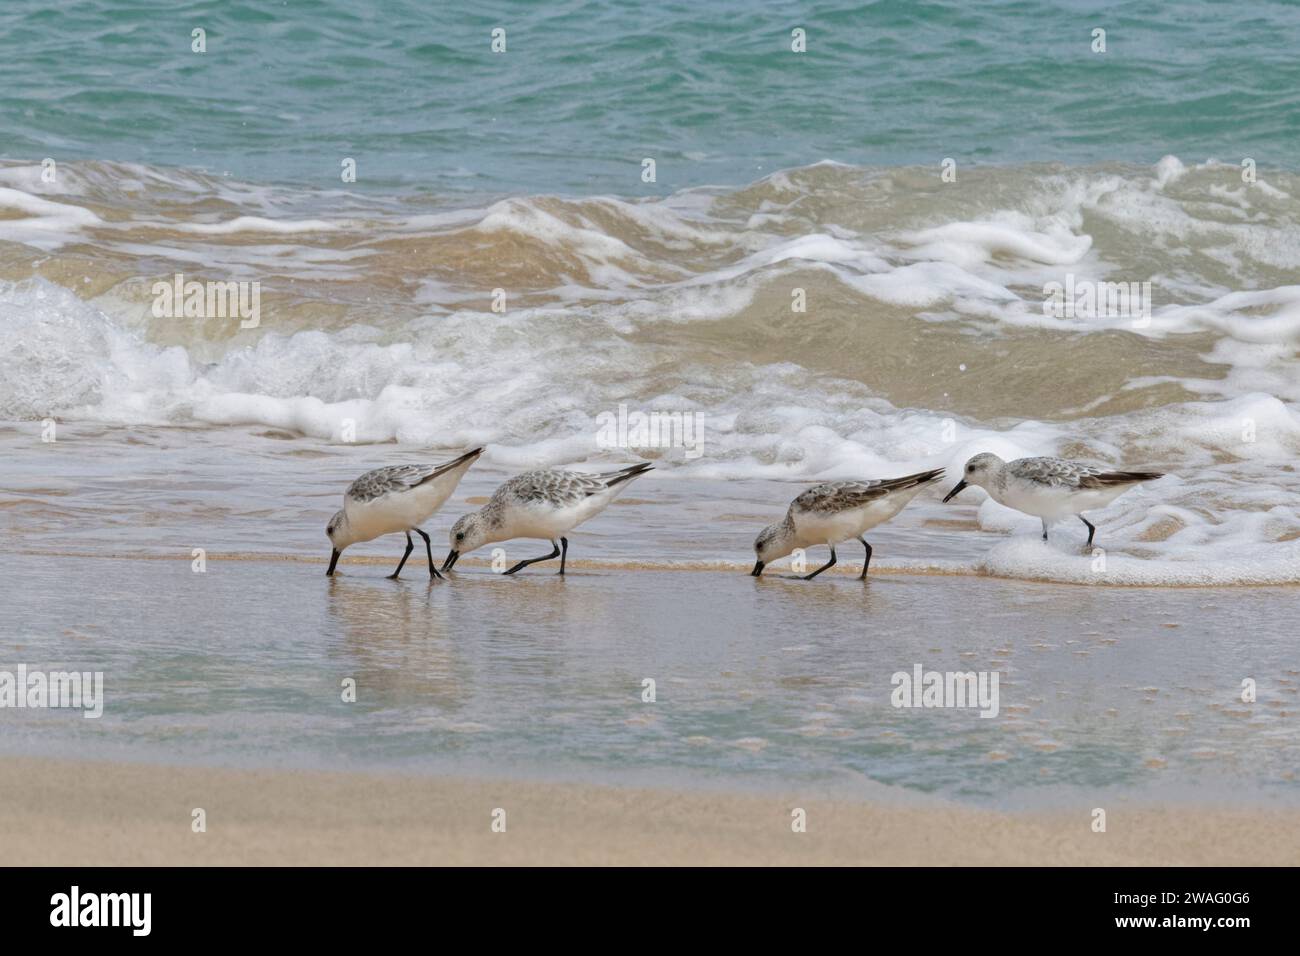 Sanderling (Calidris alba) grupo migratorio forrajeando en una orilla bañada por olas, playa de Sotavento, Jandía, Fuerteventura, Islas Canarias, septiembre. Foto de stock